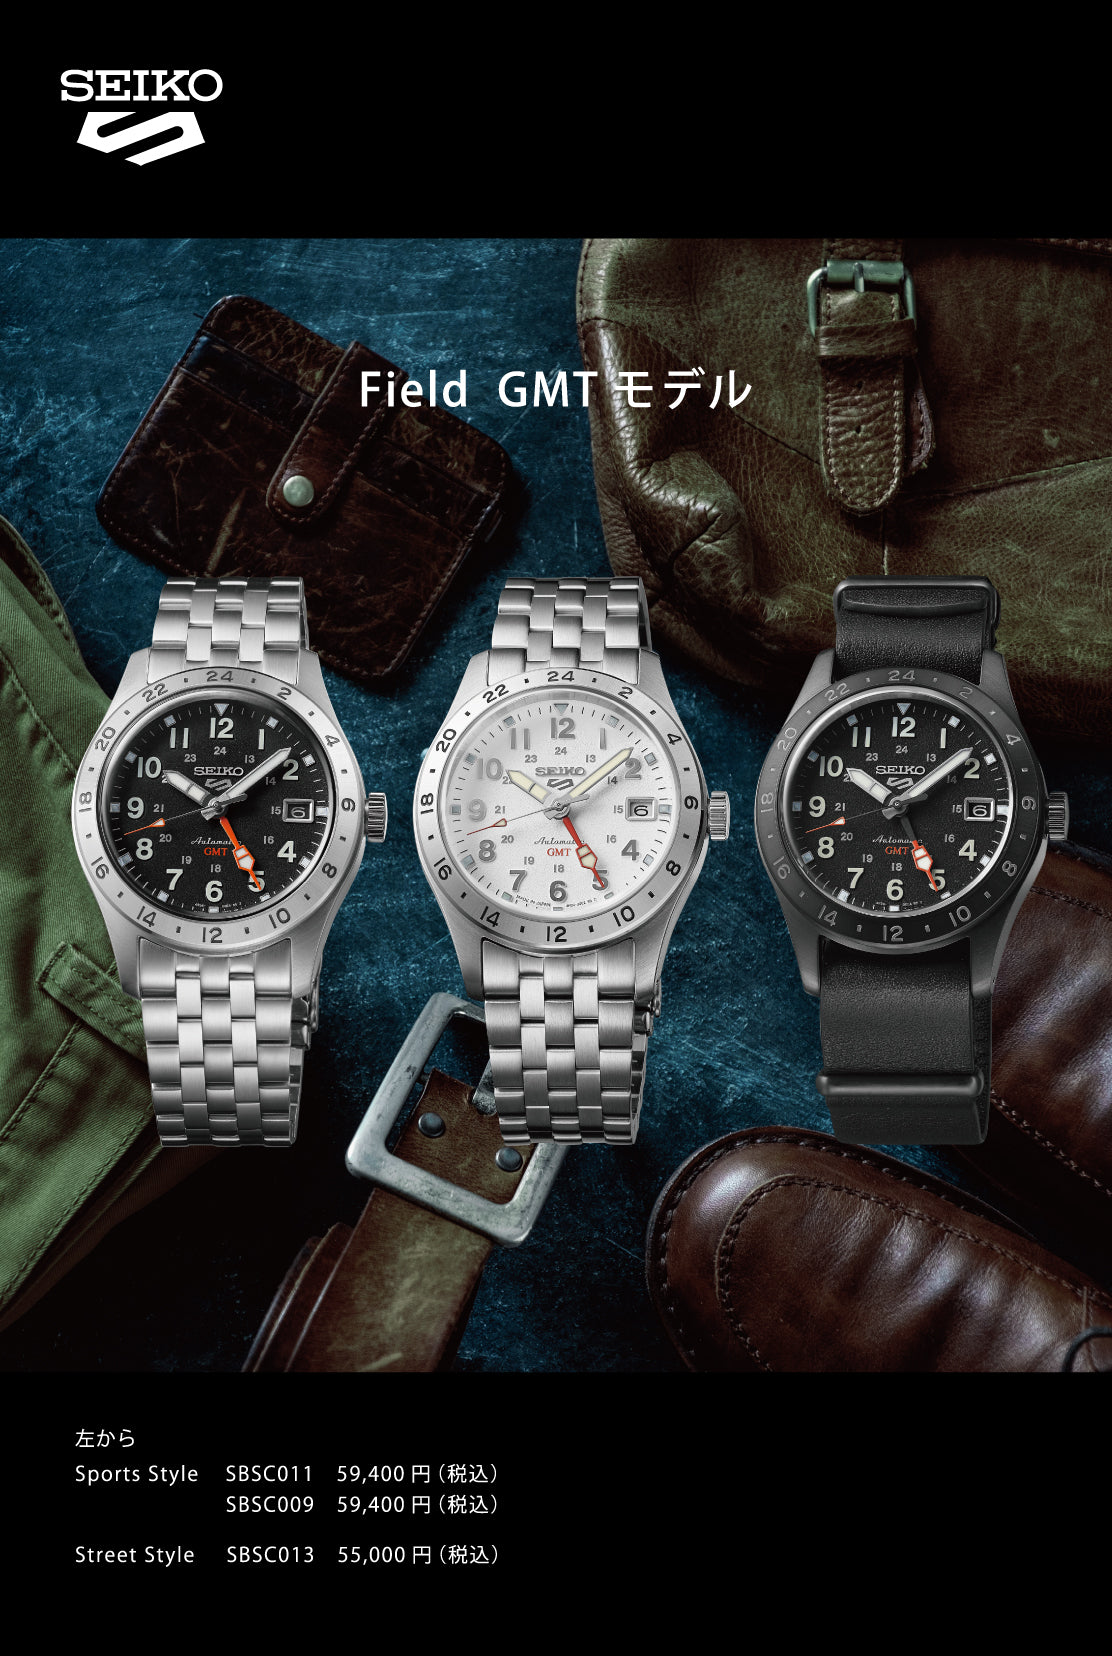 セイコー5 スポーツ フィールド GMT スポーツスタイル SBSC009 メンズ 腕時計 メカニカル 自動巻き ホワイトダイヤル メタルバンド 日本製